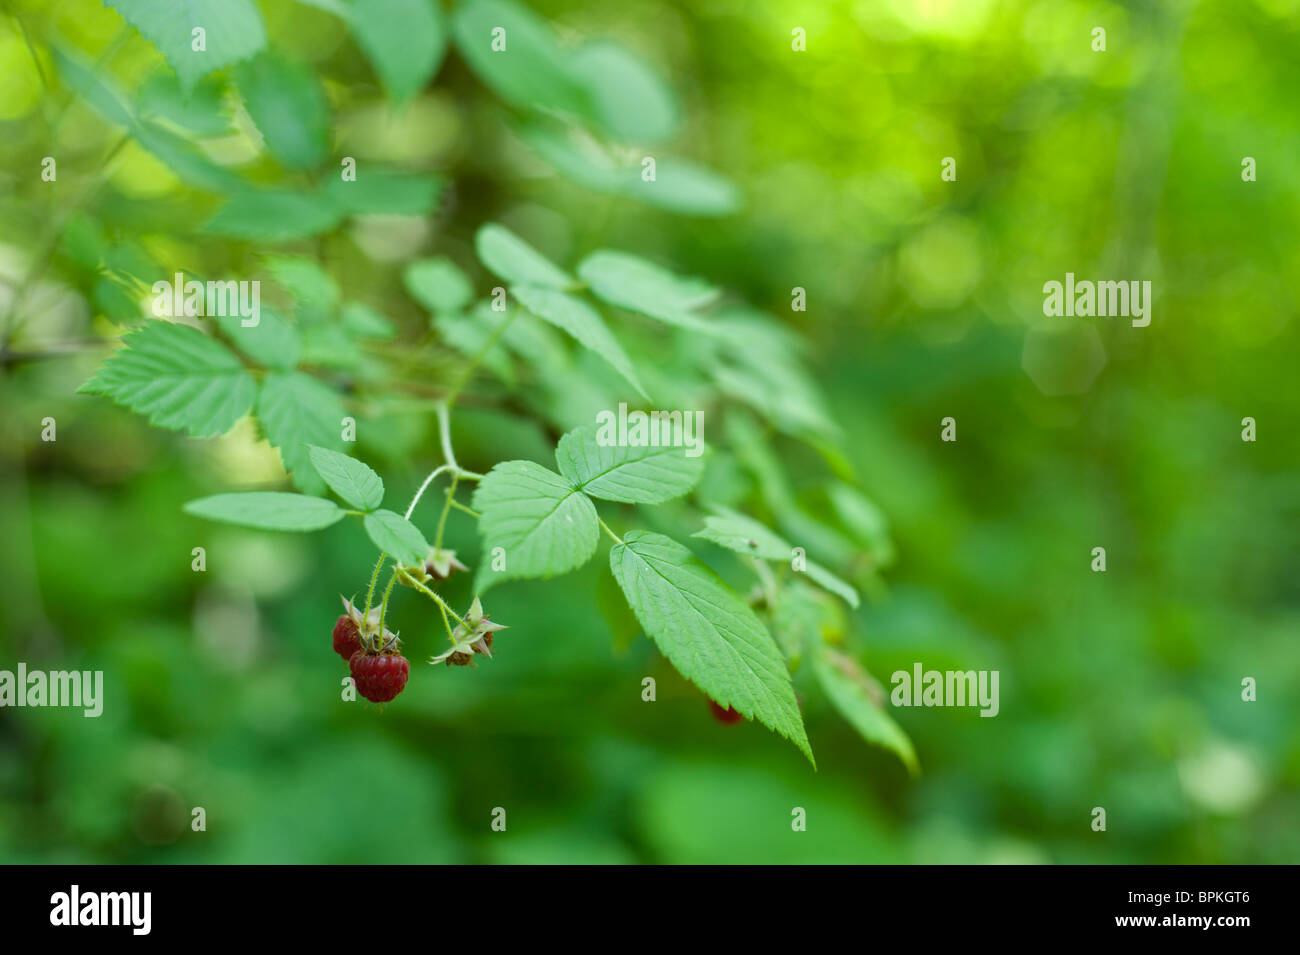 https://c8.alamy.com/comp/BPKGT6/wild-raspberries-rubus-strigosus-growing-wild-in-a-deciduous-woods-BPKGT6.jpg